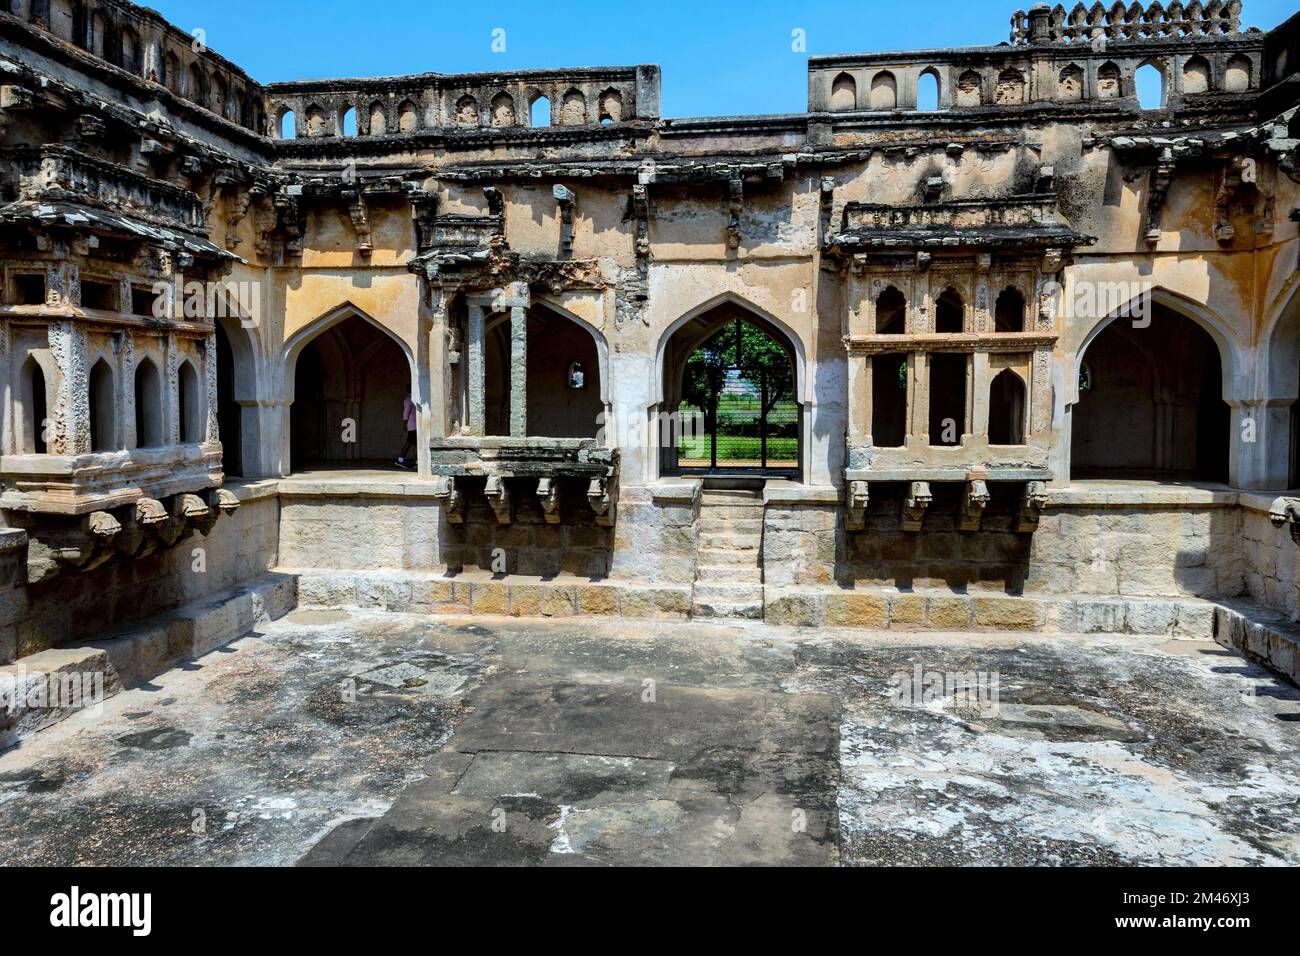 Salle de bains de la Reine, Hampi, site classé au patrimoine mondial de l'UNESCO, district de Vijayanagara, Karnataka, Inde Banque D'Images